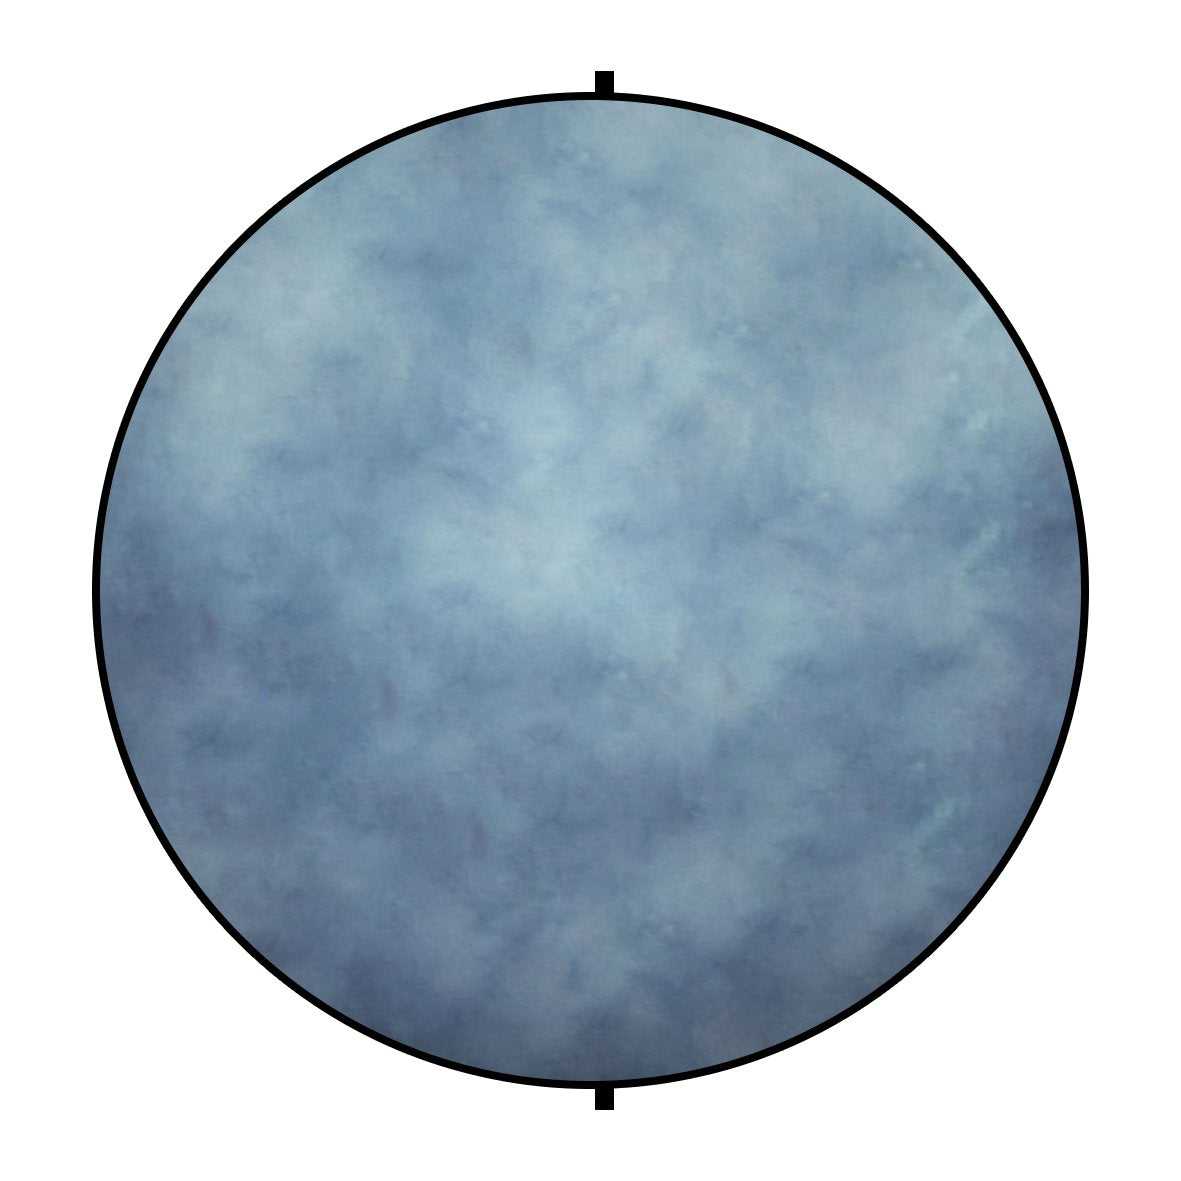 Kate Double-face Rond Abstrait Bleu/Marron clair Photographie Toile de fond Pliable 5x5pi(1.5x1.5m)